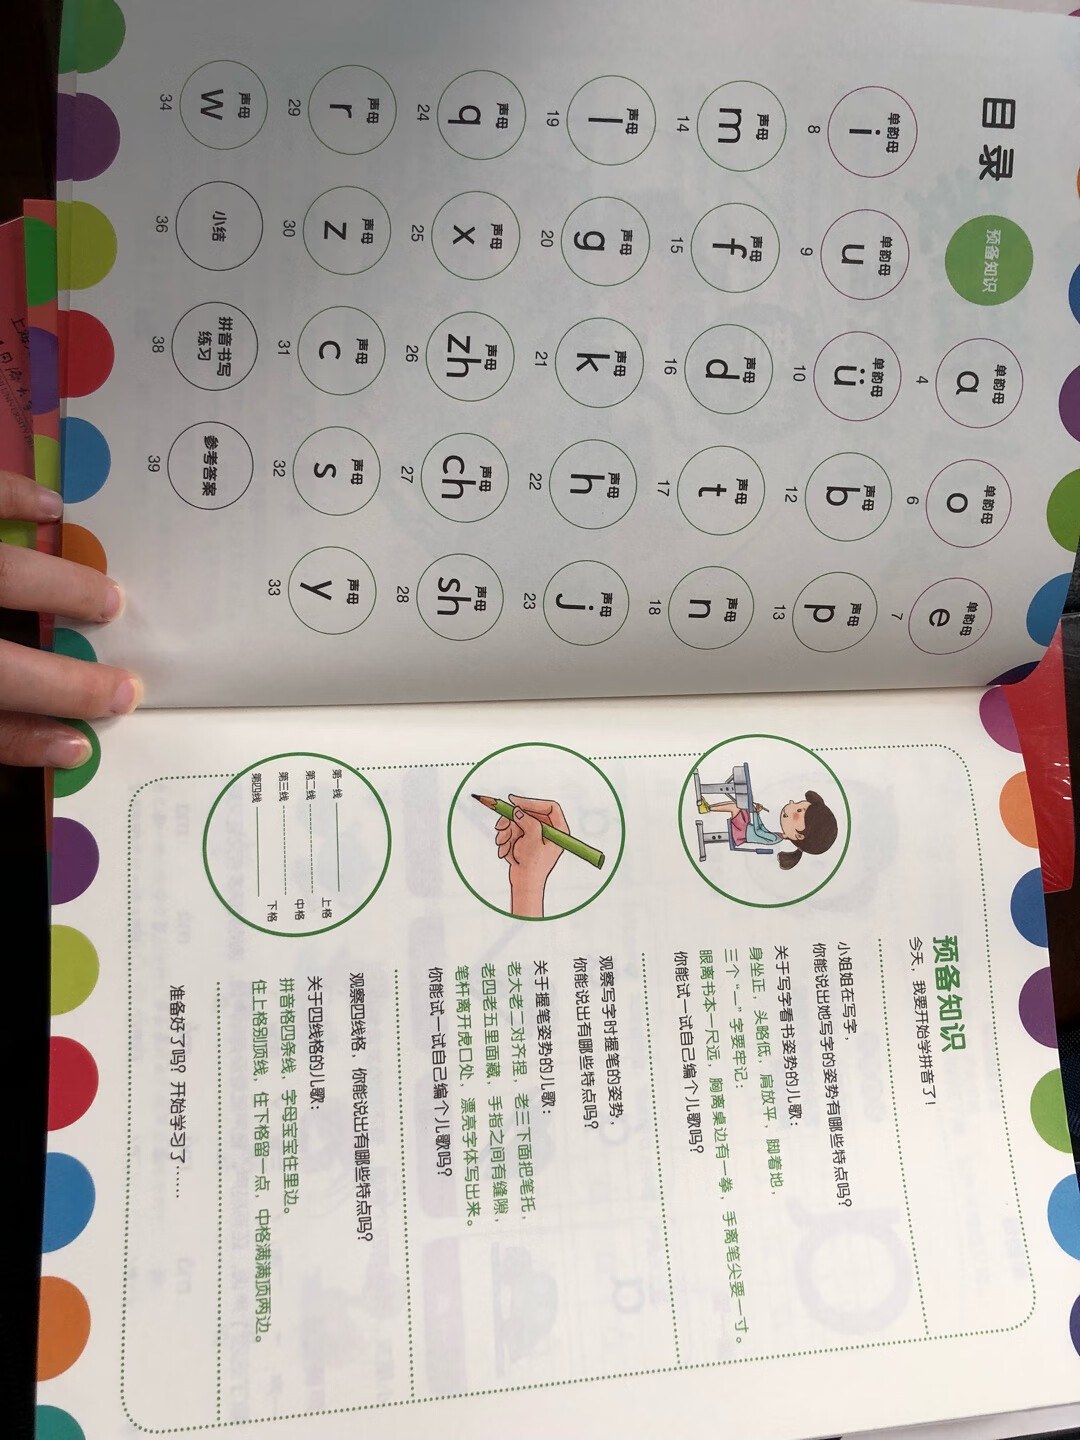 为了自己教孩子拼音买的，看了一些教材选了这套，还不错，还没有开始使用，书的质量很好。